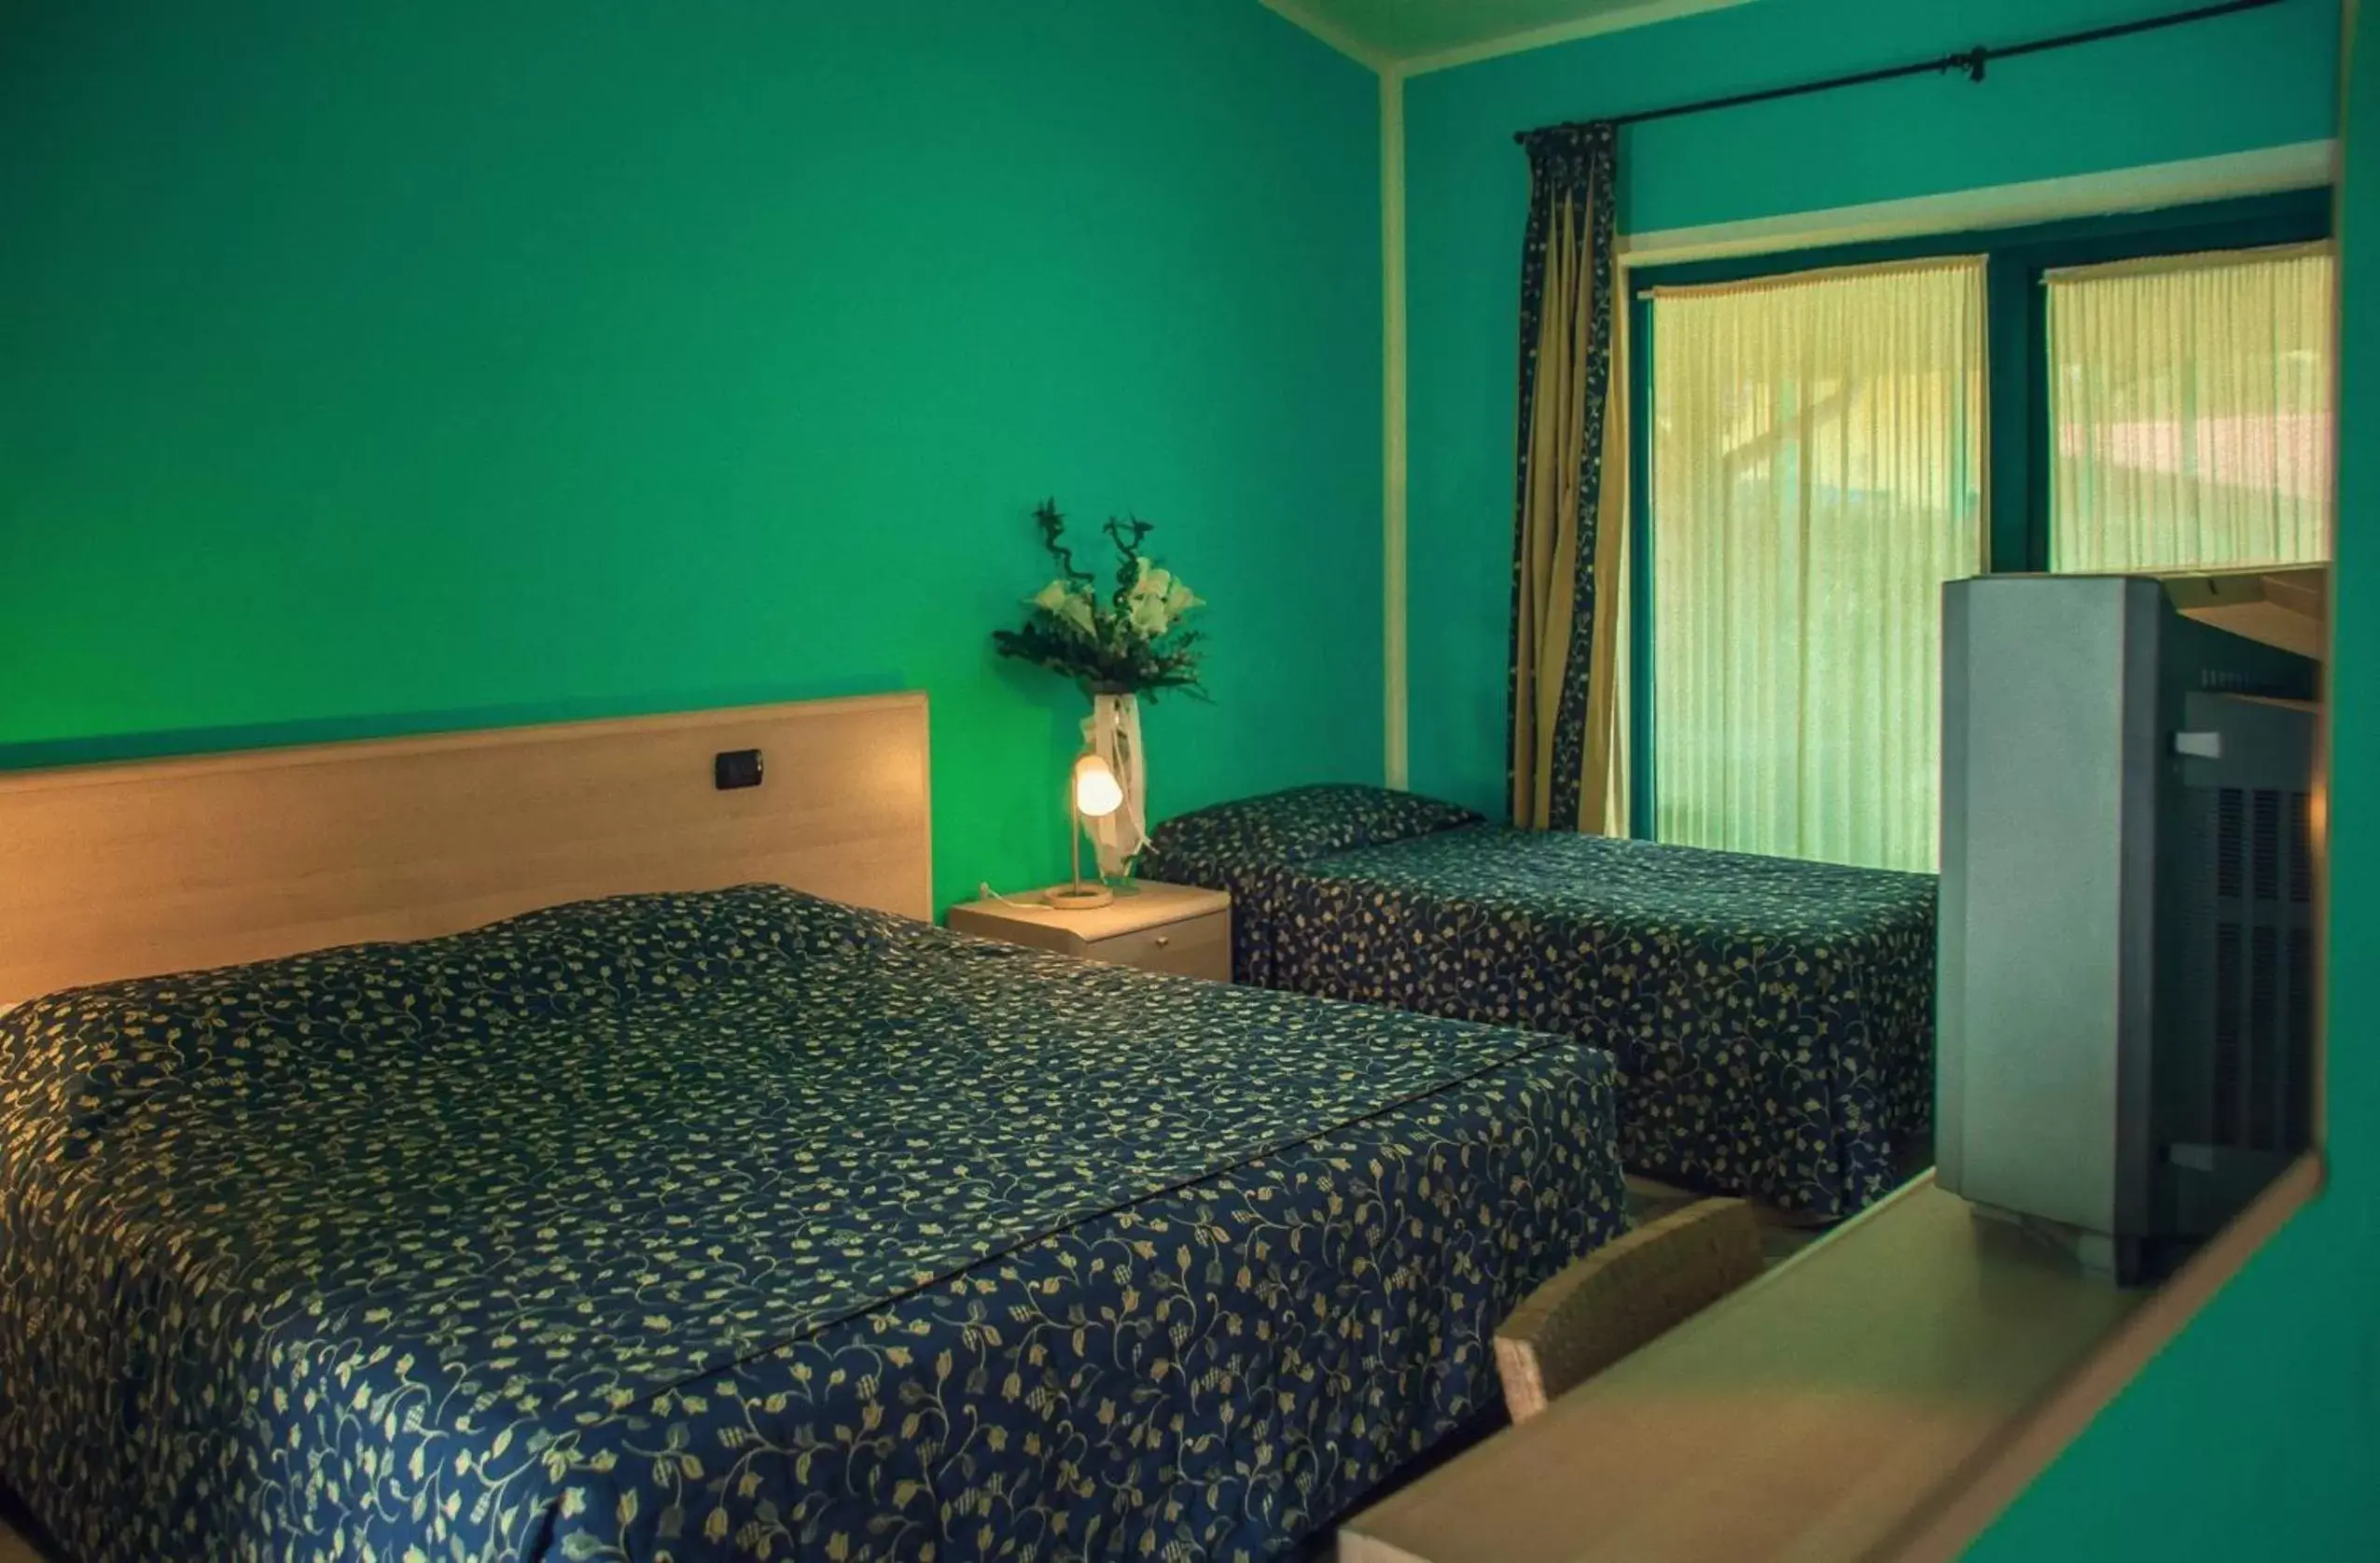 Bed, Room Photo in Hotel Ristorante La Perla